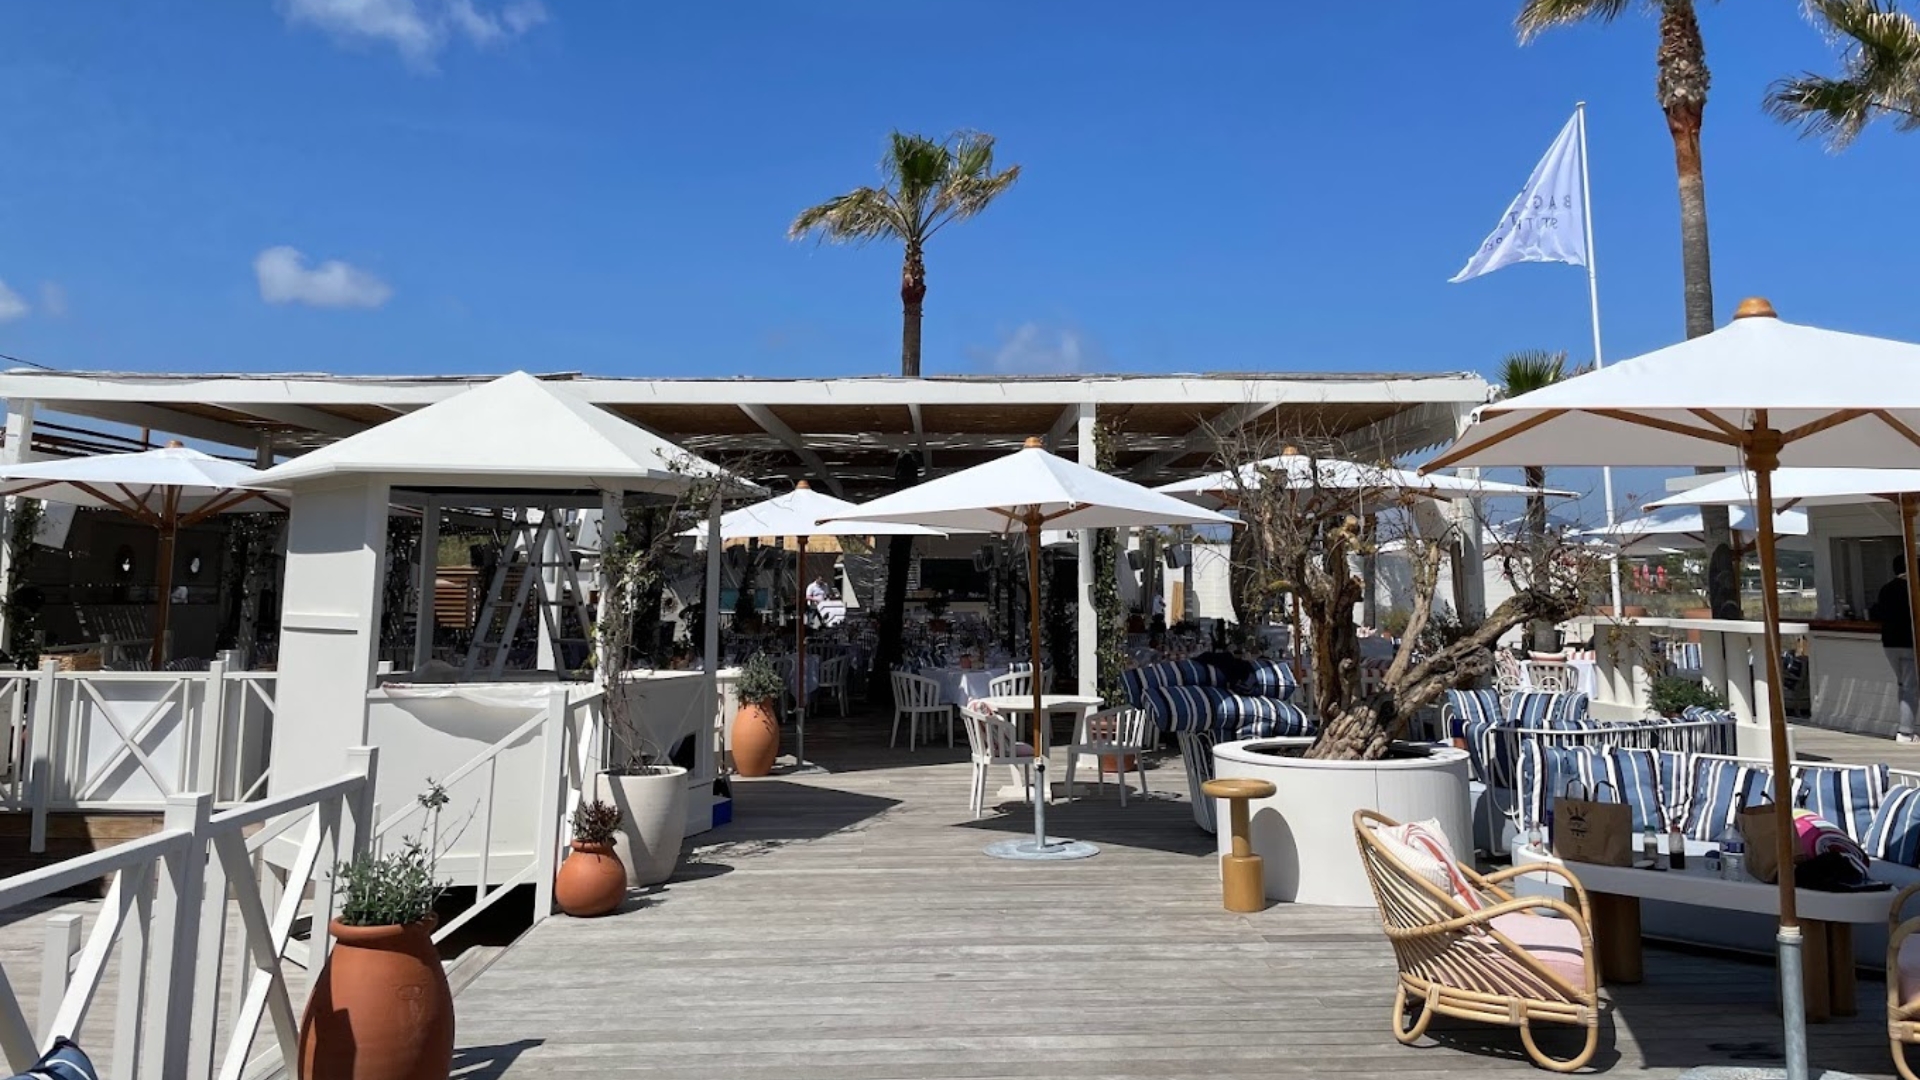 Bagatelle Beach Saint Tropez beach clubs